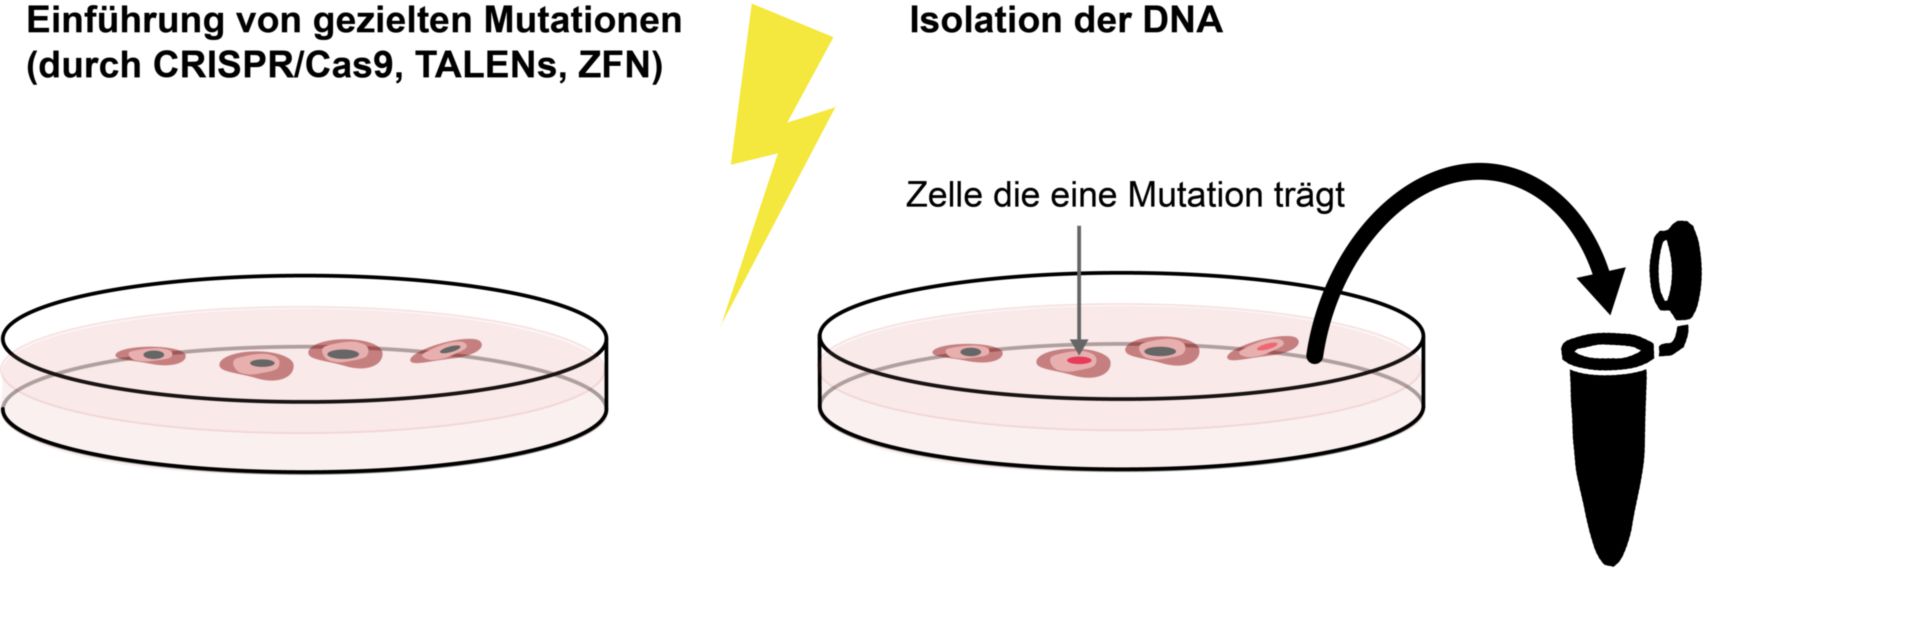 Isolation von DNA, welche mittels Genome-Editing-Methoden mutiert wurde